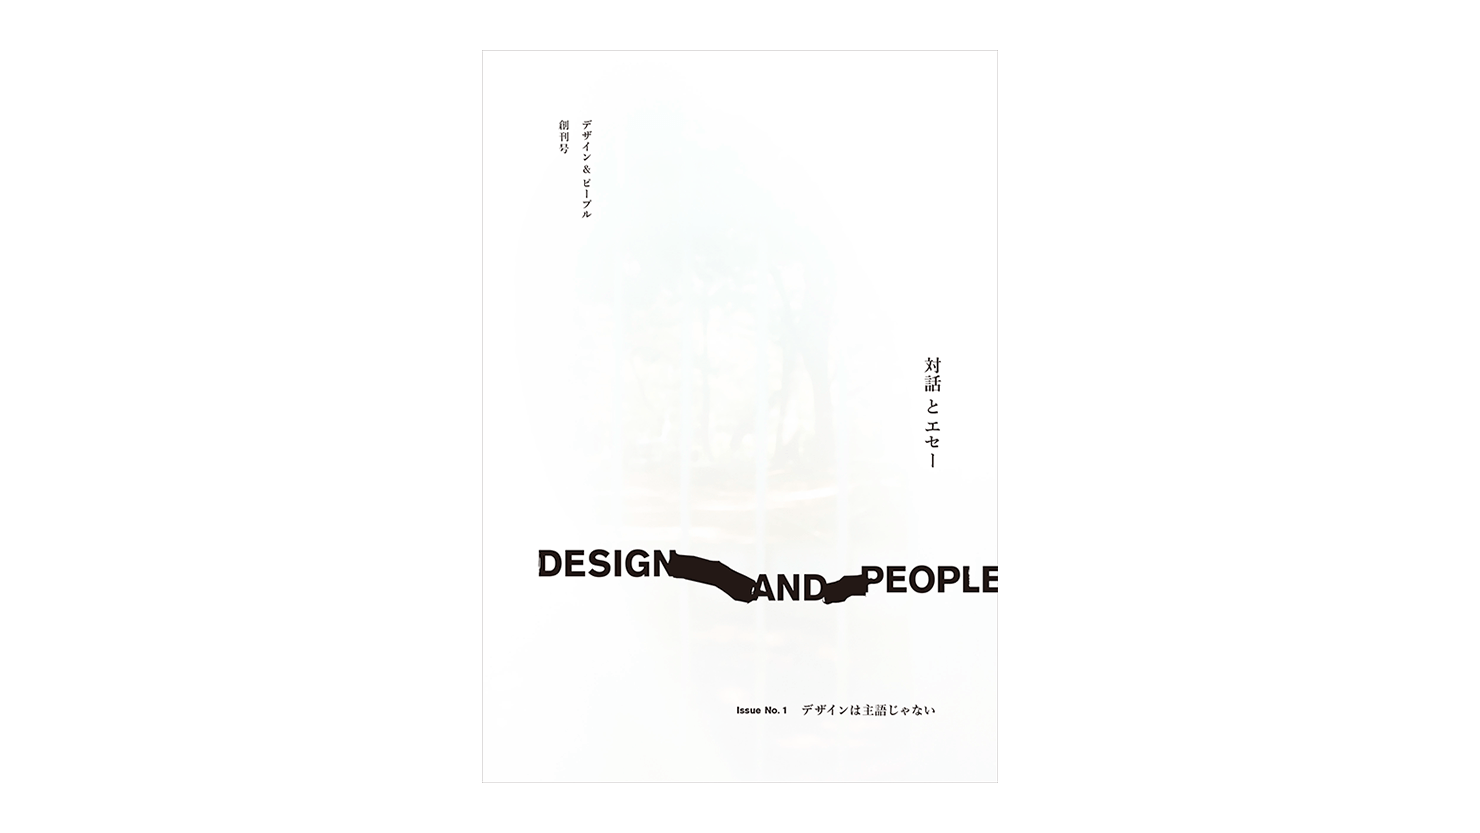 デザイン誌『DESIGN AND PEOPLE｜Issue No. 1』刊行記念クロストークイベント第2回を青山ブックセンターにて開催